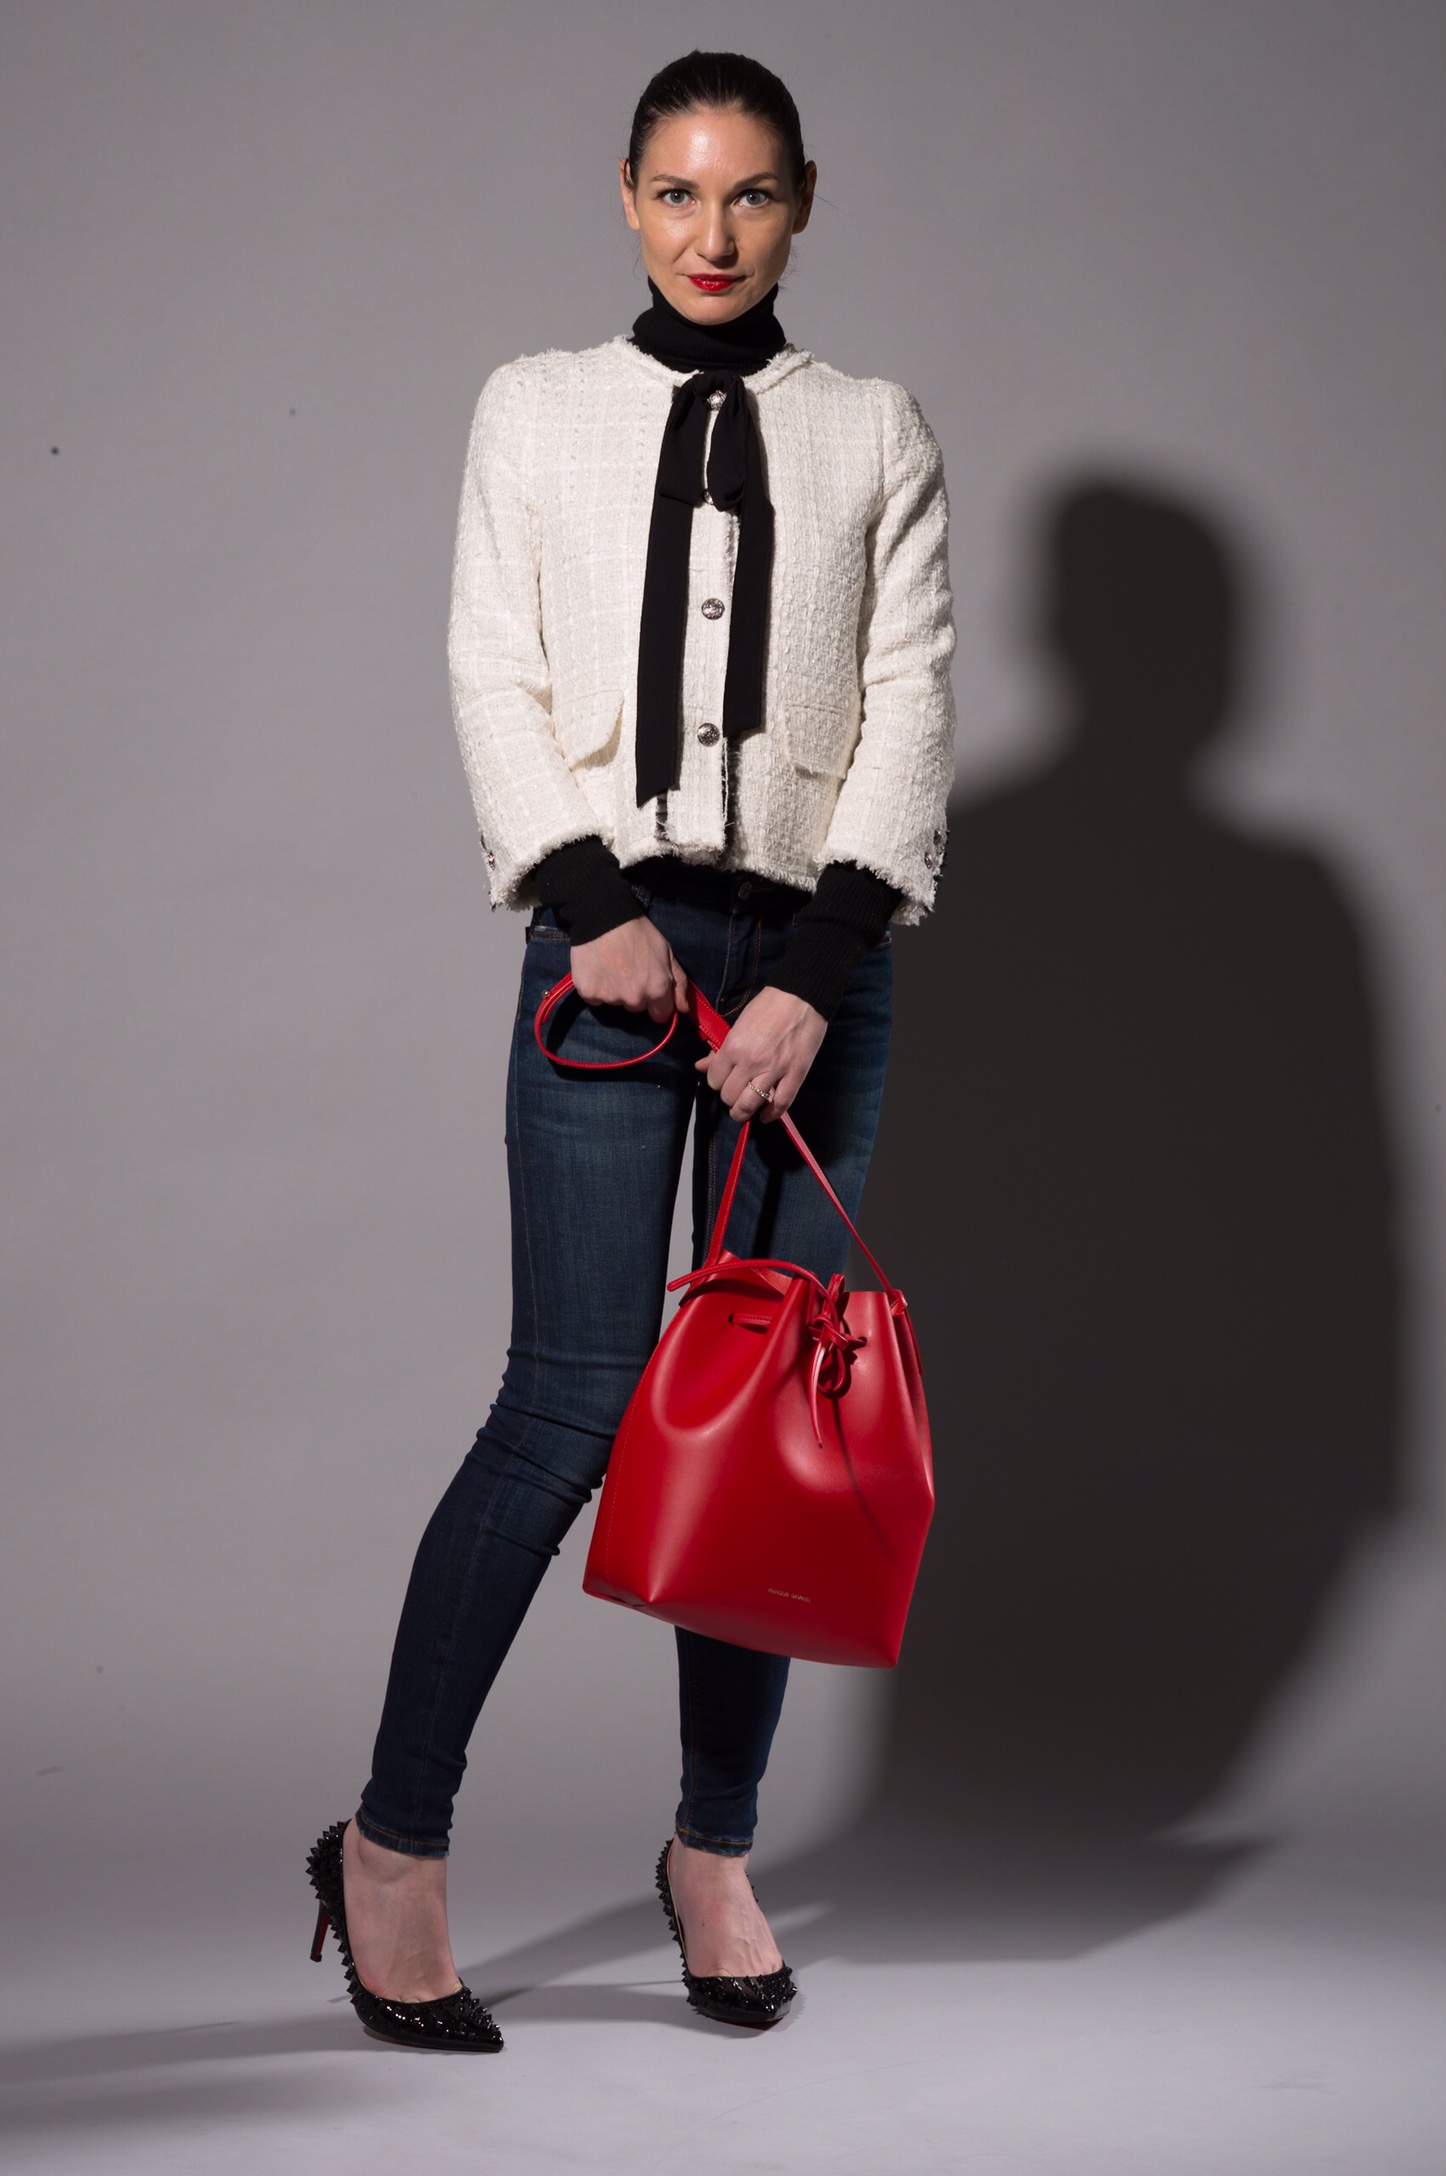 Zara-Jacket-with-Bow.jpg